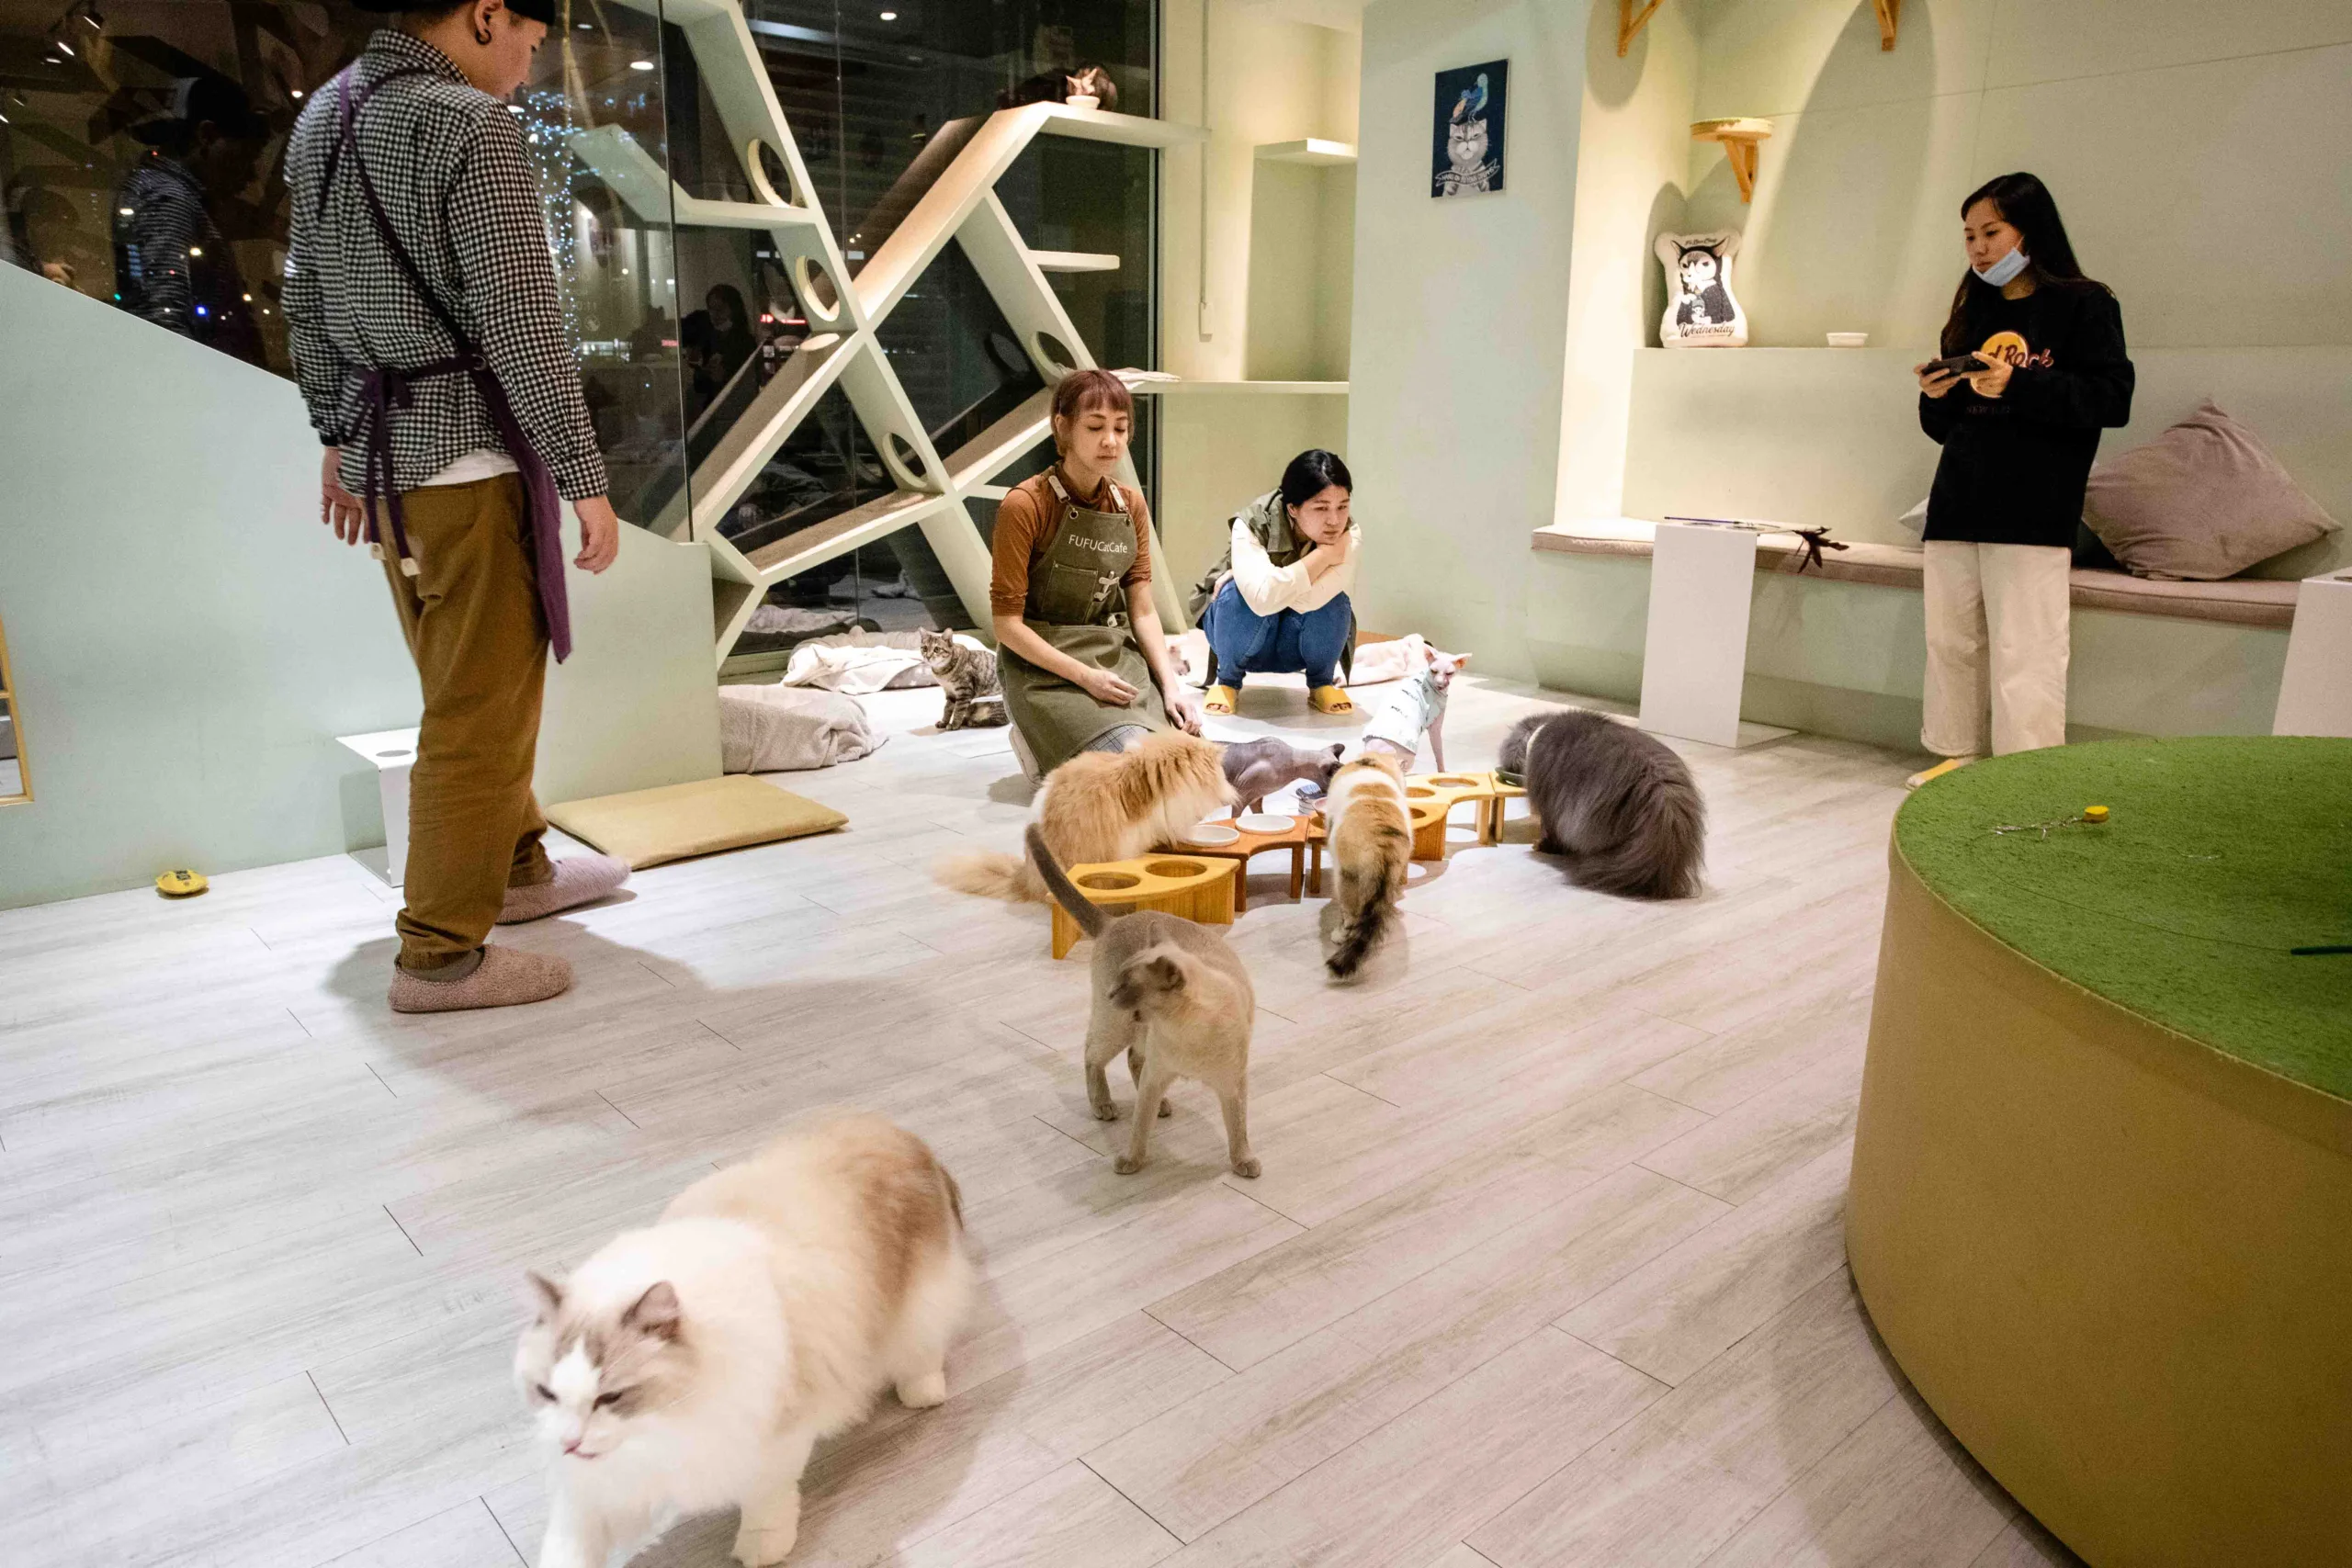 療癒後的焦慮 動物咖啡廳引發的爭議